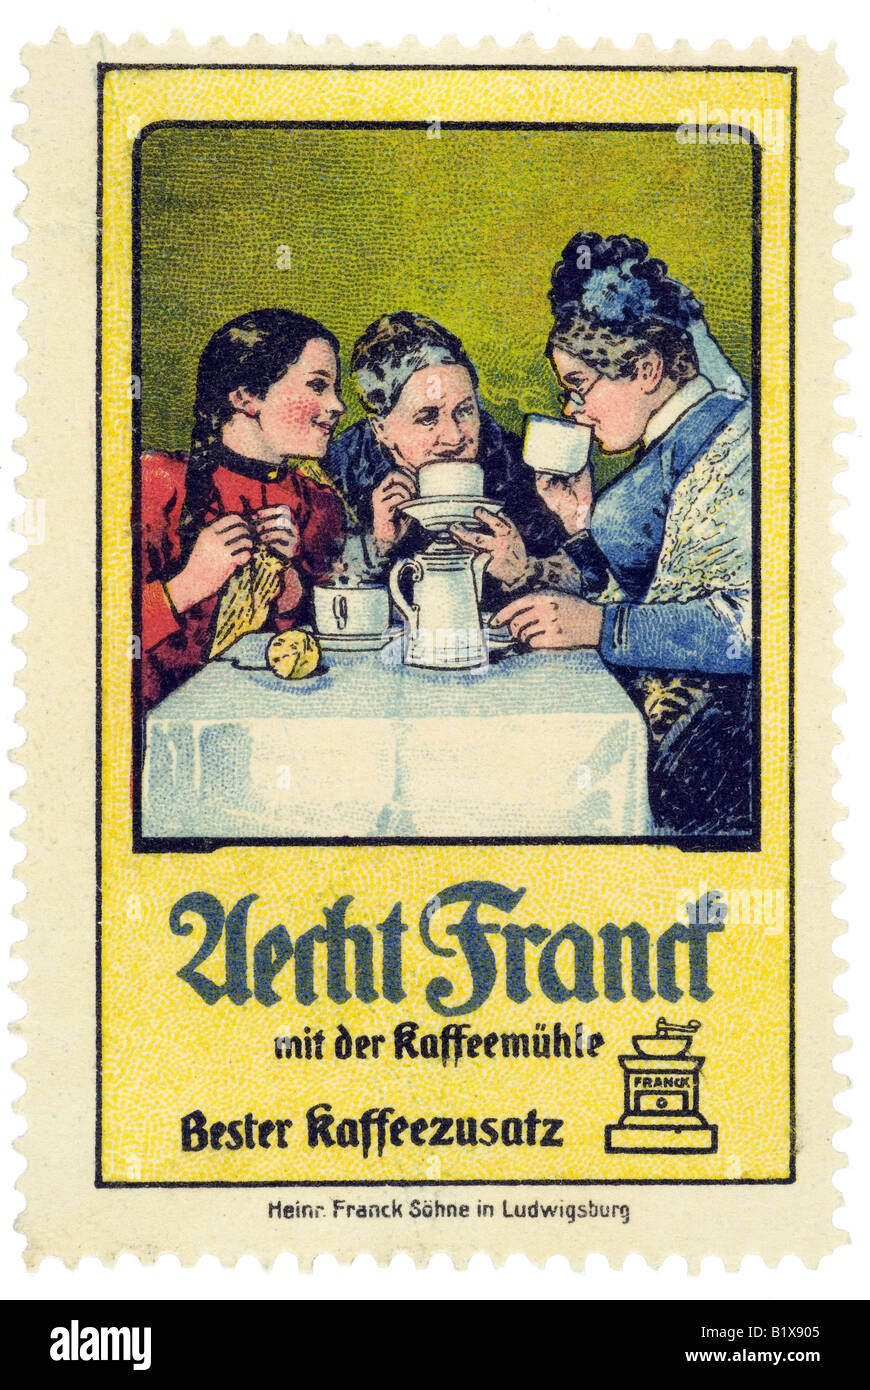 trading stamp coffee Aecht Franck der mit der Kaffeemühle Bester Kaffeezusatz Stock Photo